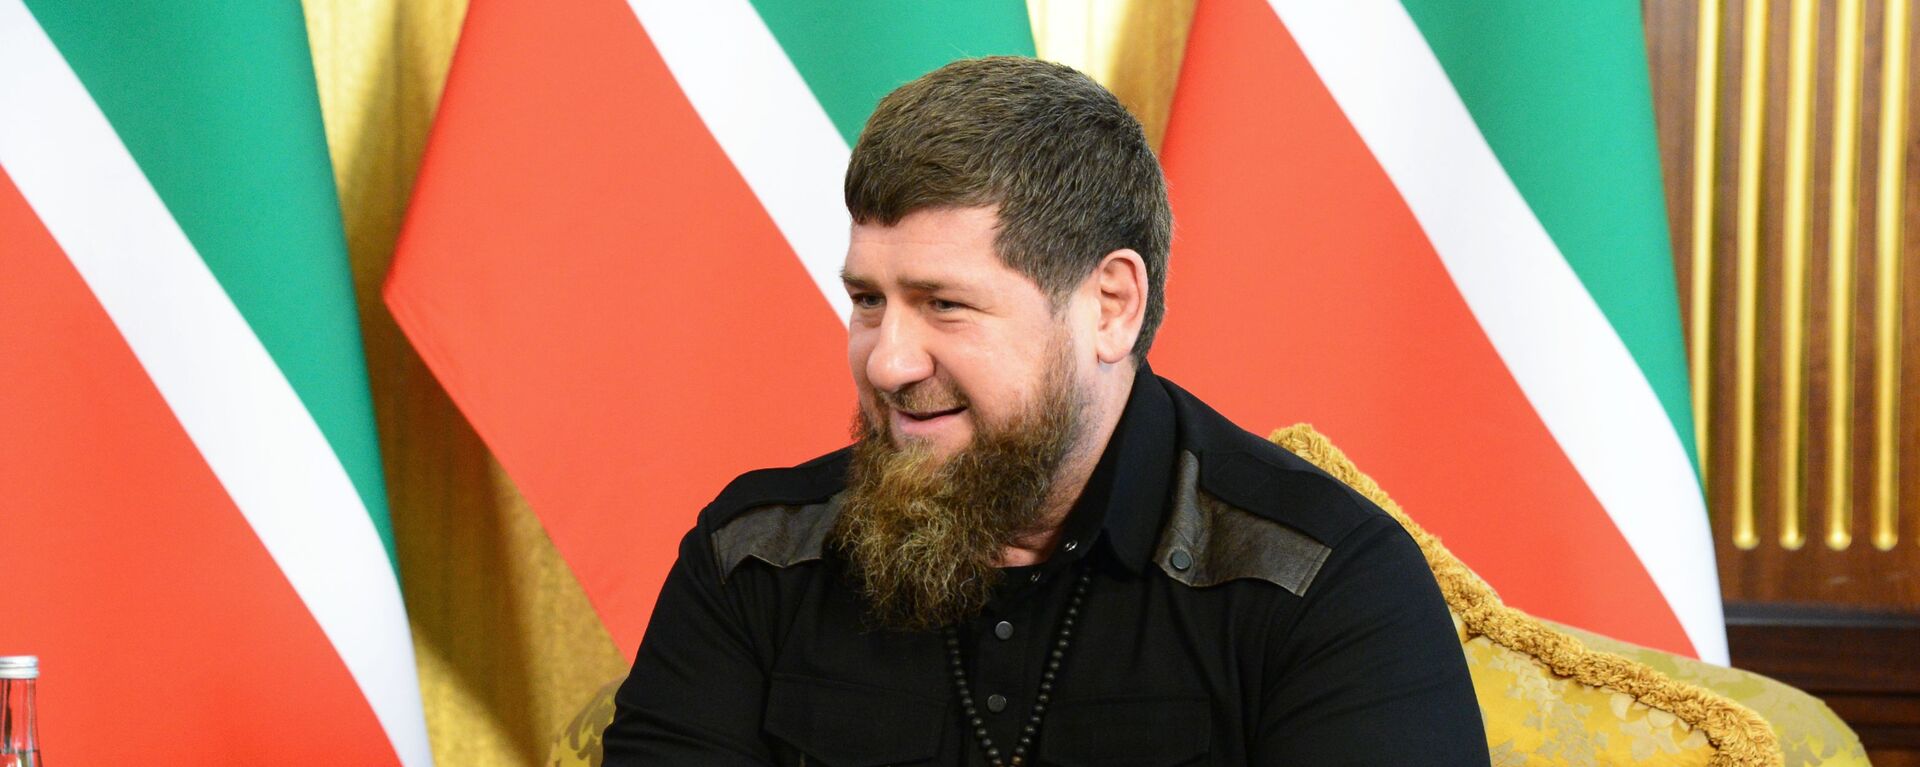 Глава Чеченской Республики Рамзан Кадыров  - Sputnik Кыргызстан, 1920, 21.09.2021